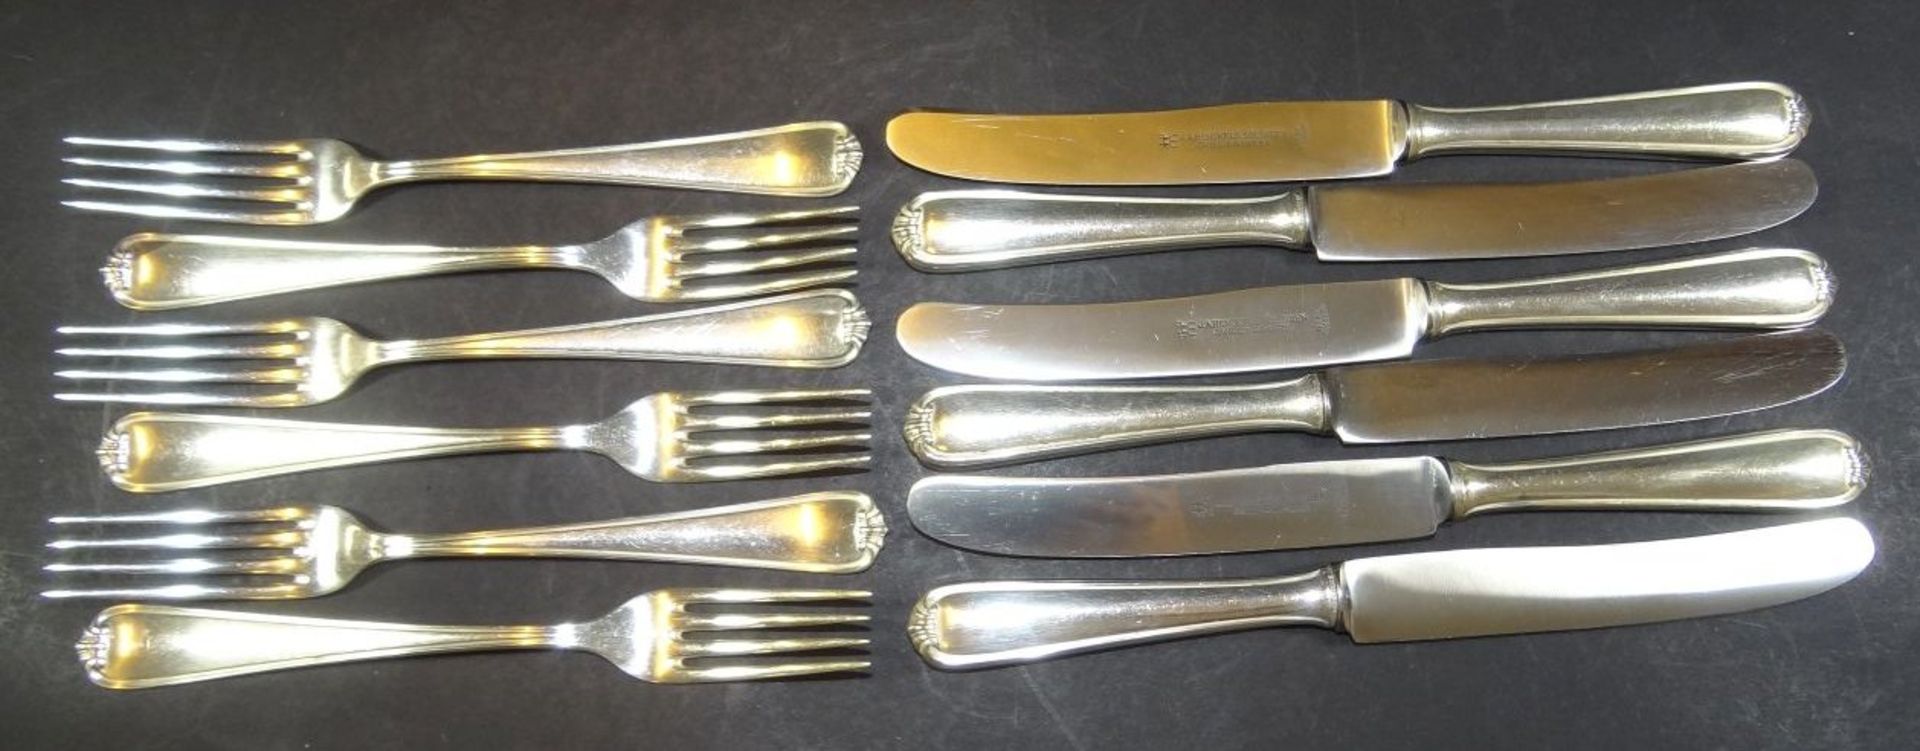 6 Speise-Messer und Gabeln, Silber-800, L-25 cm, Gabeln  zus. ca. 384 gr., Messer zus. 516 gr.